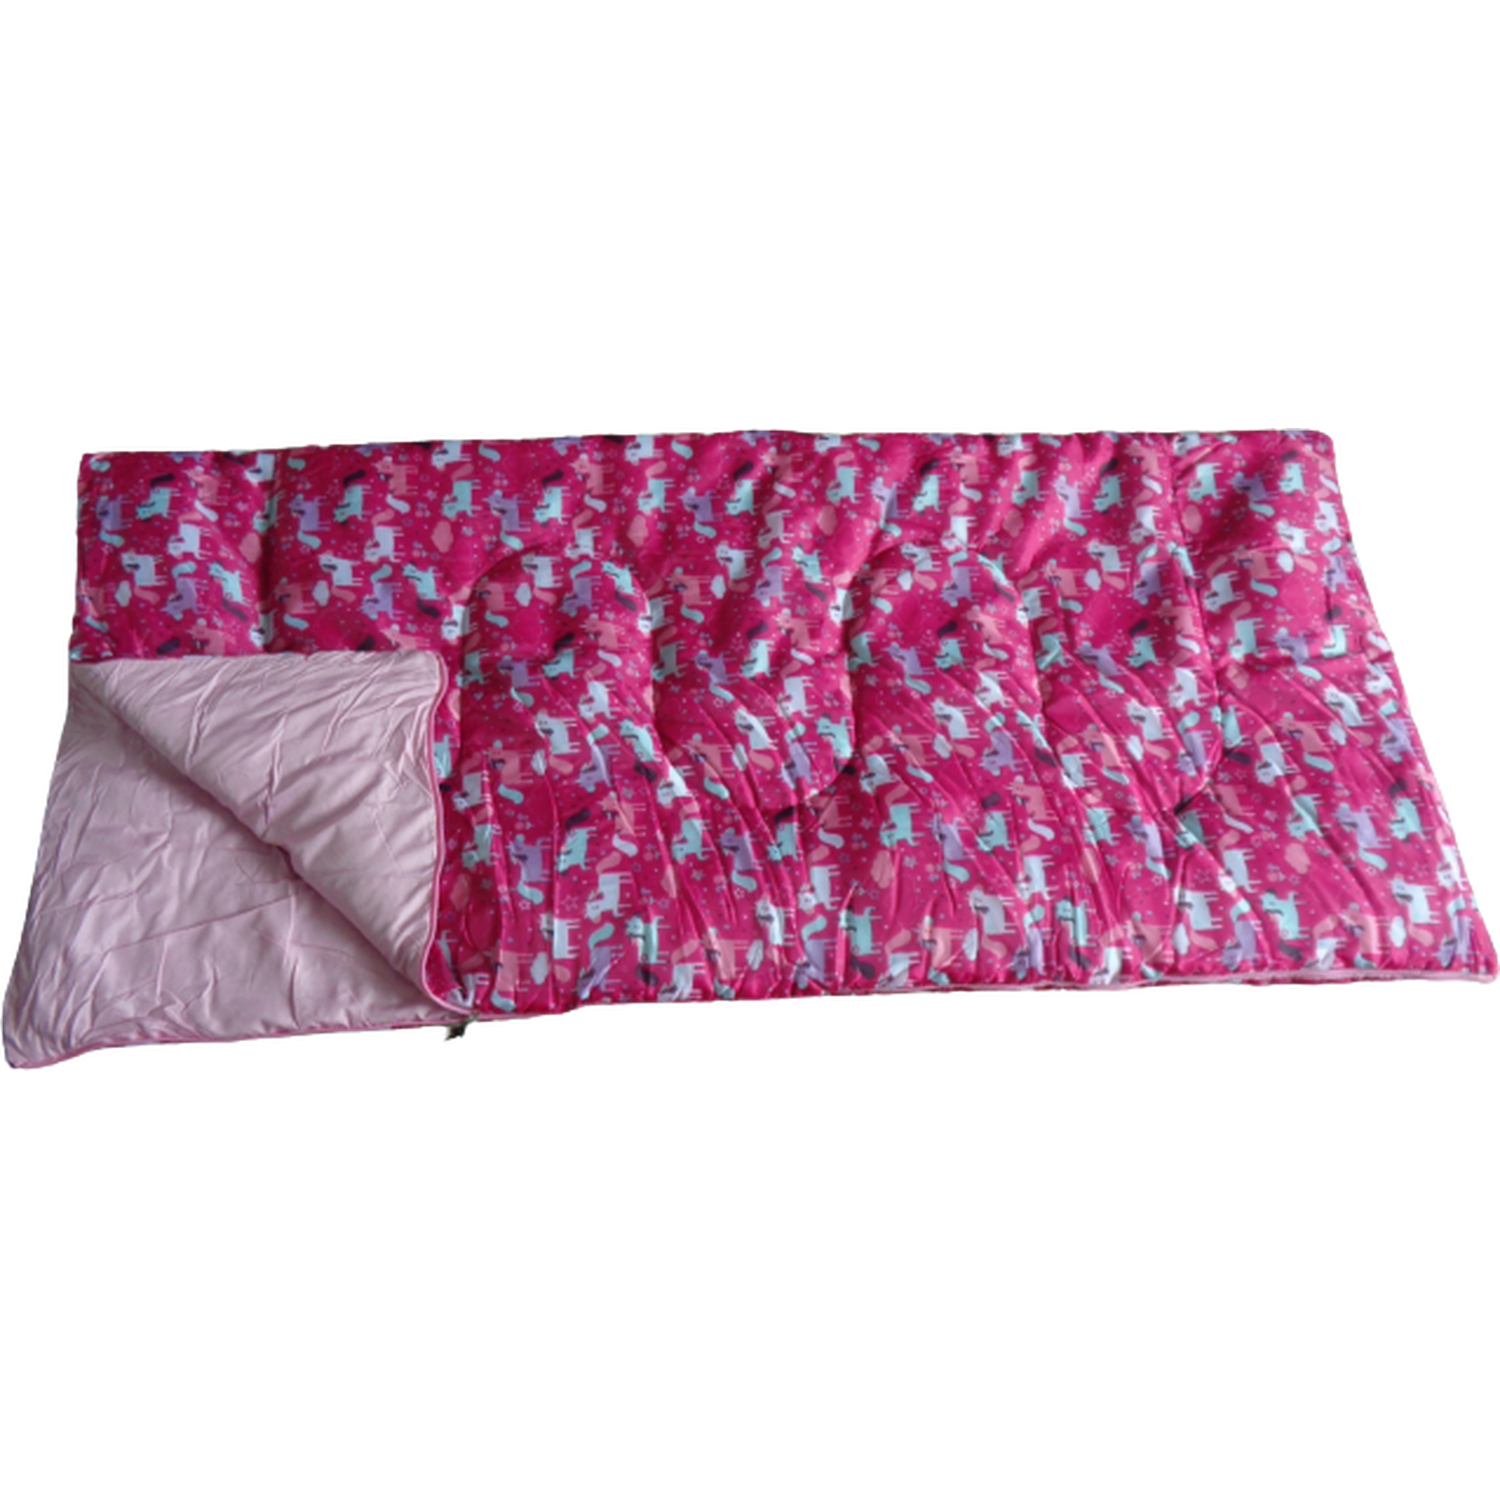 Children Sleeping Bag - Pink Image